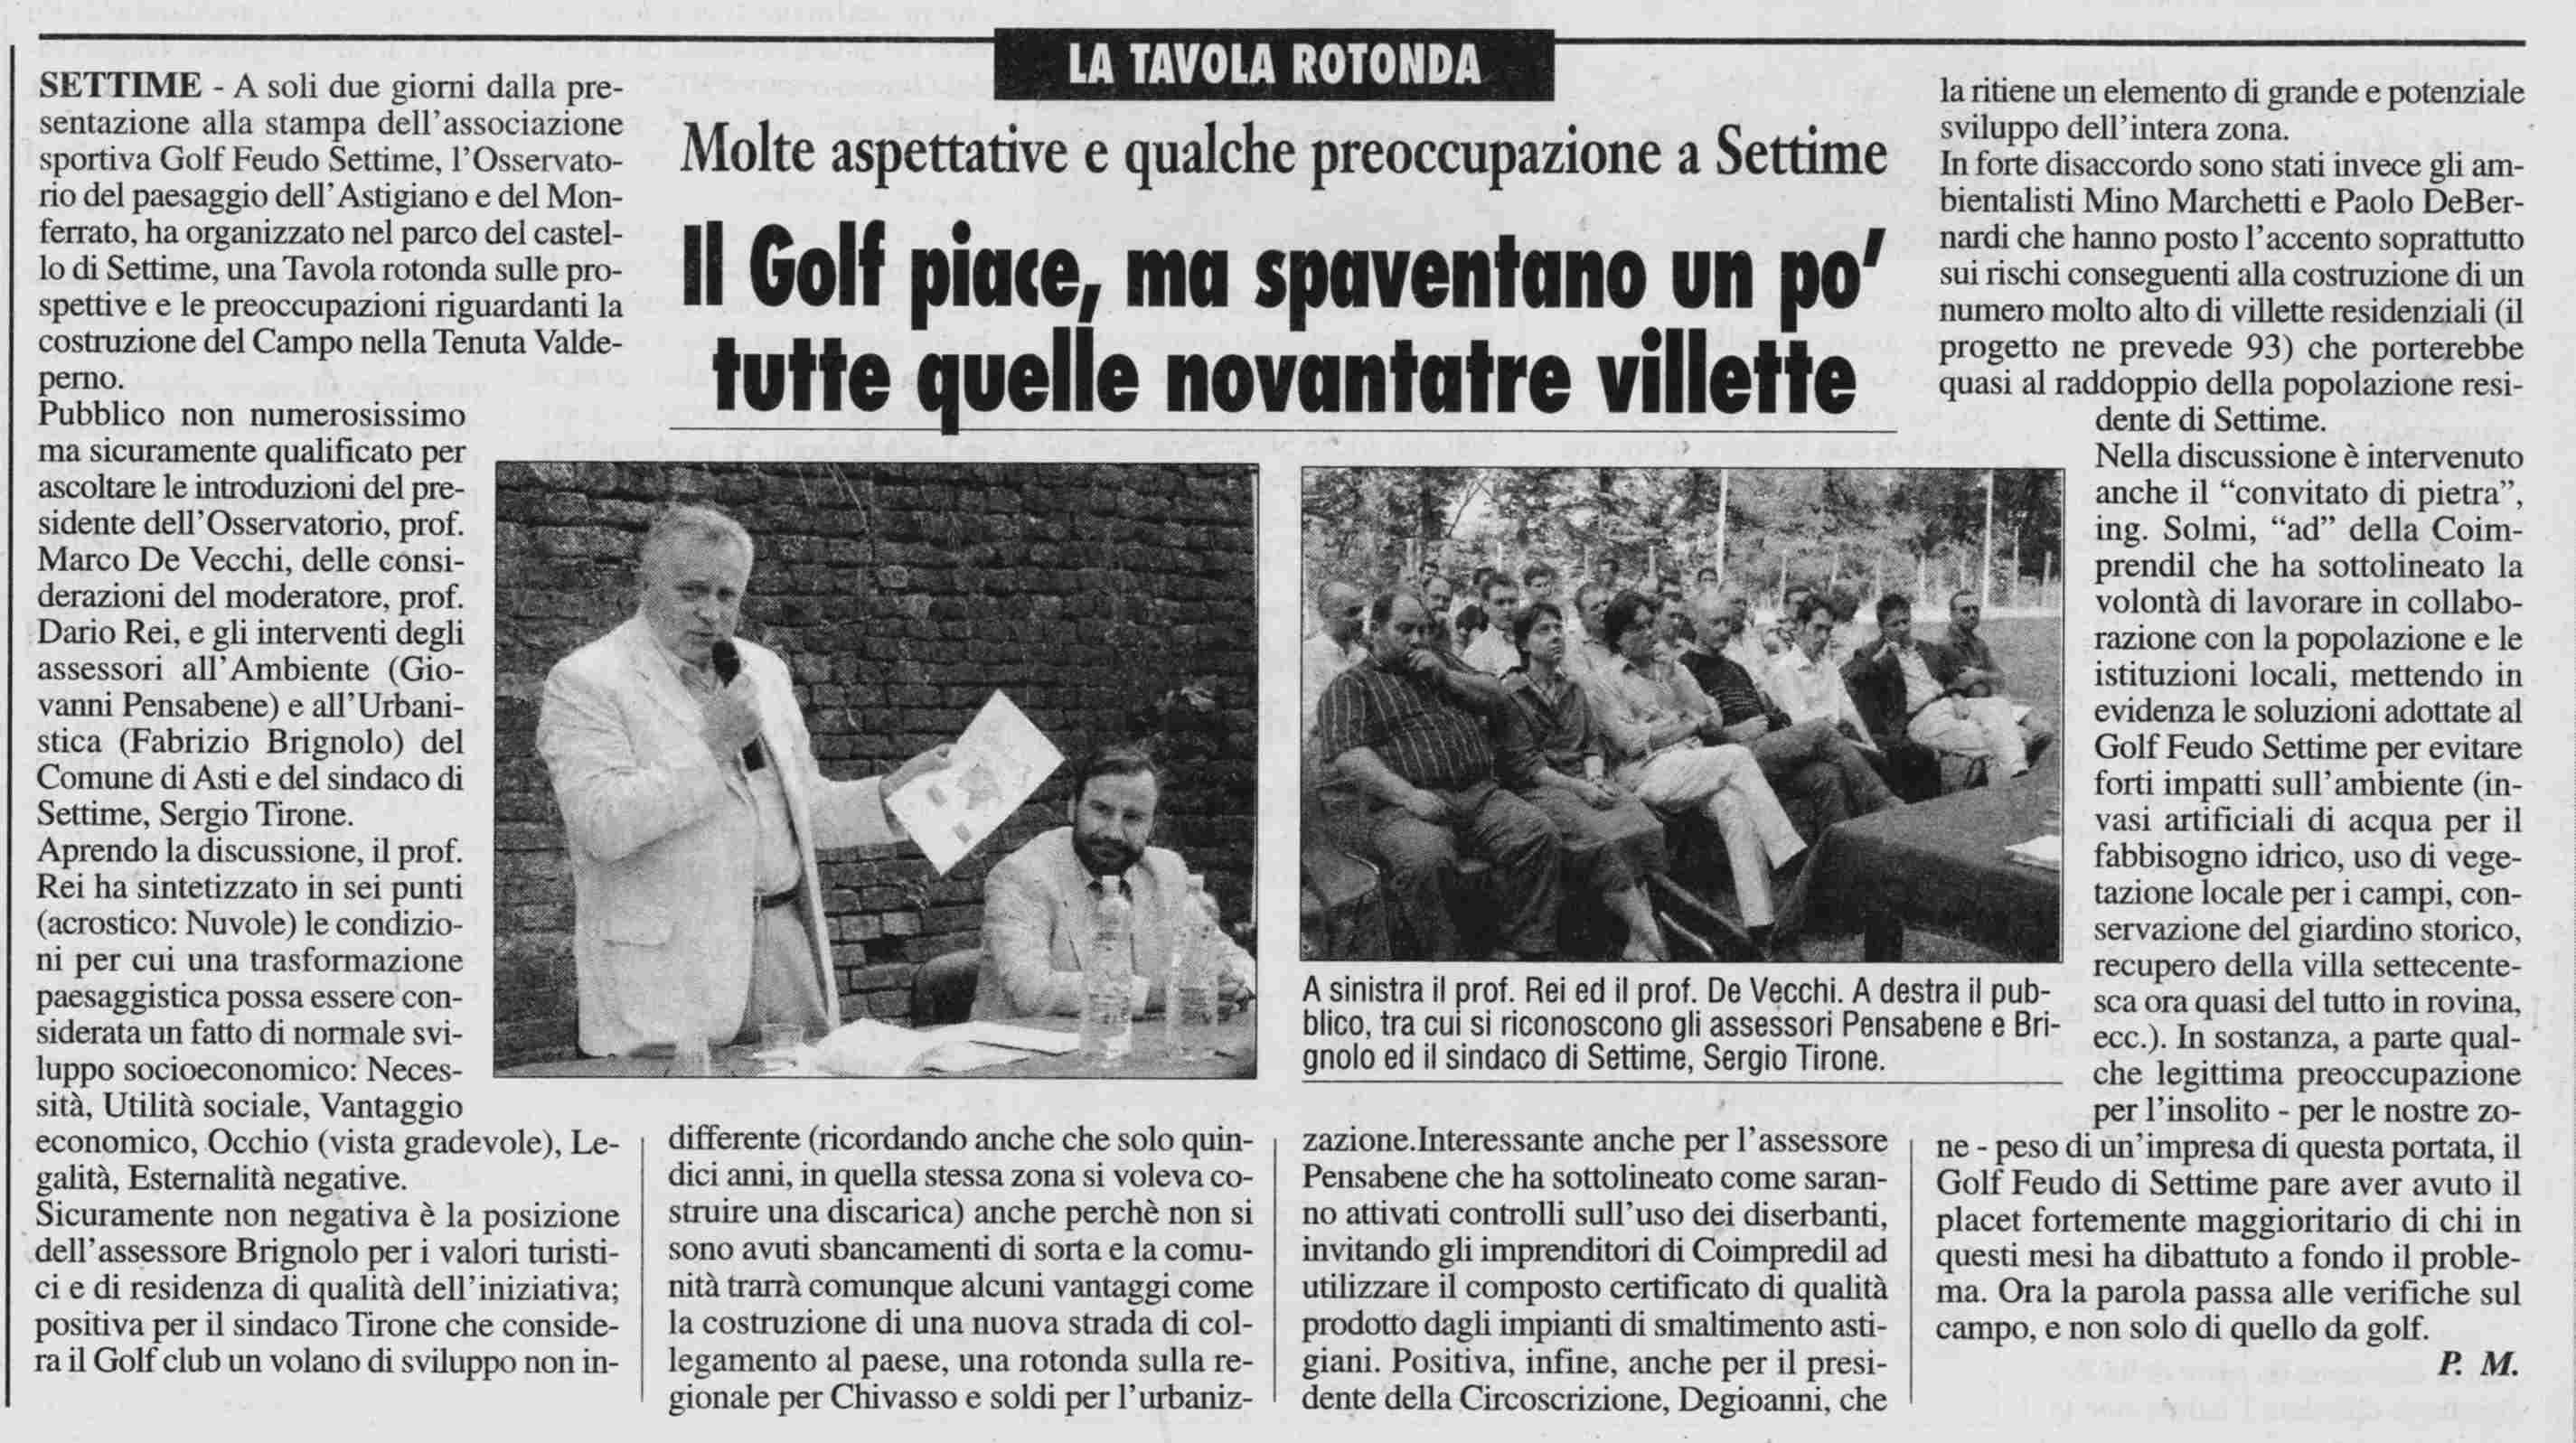 Rassegna stampa su Tavola rotonda - "Preoccupazioni e prospettive sulle ville e relativo Campo da golf a Valdeperno"